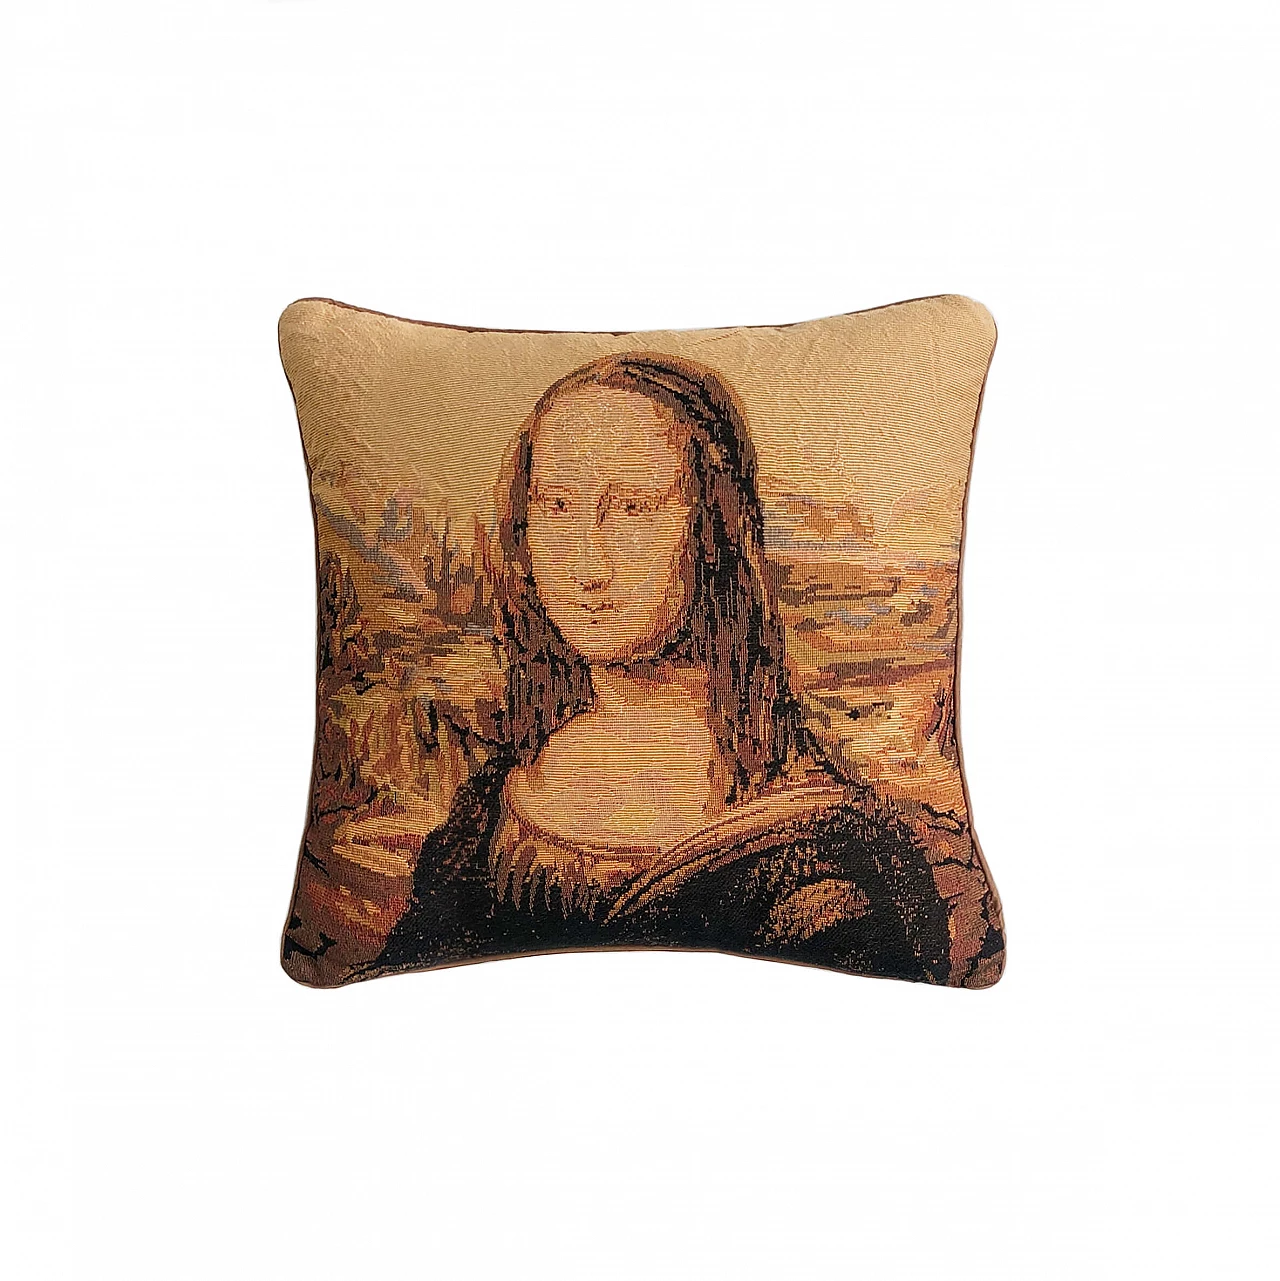 Mona Lisa souvenir cushion, 1970s 1323841